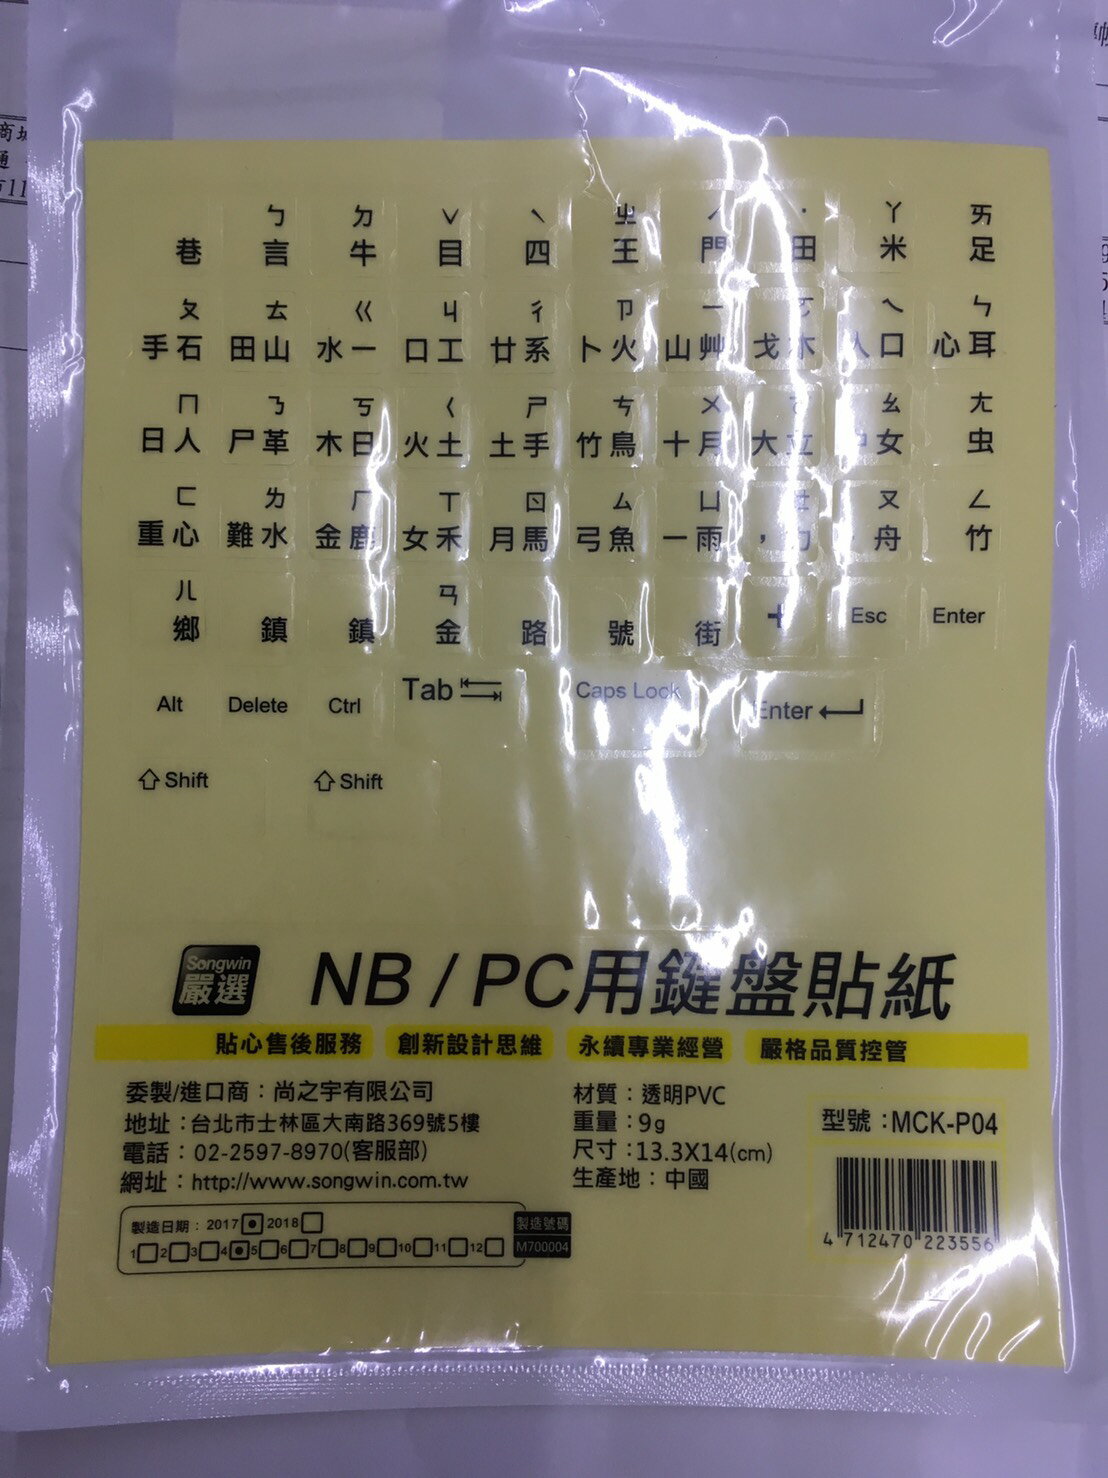 Songwin 尚之宇 NB/PC用鍵盤貼紙 透明底黑字 MCK-P04-富廉網